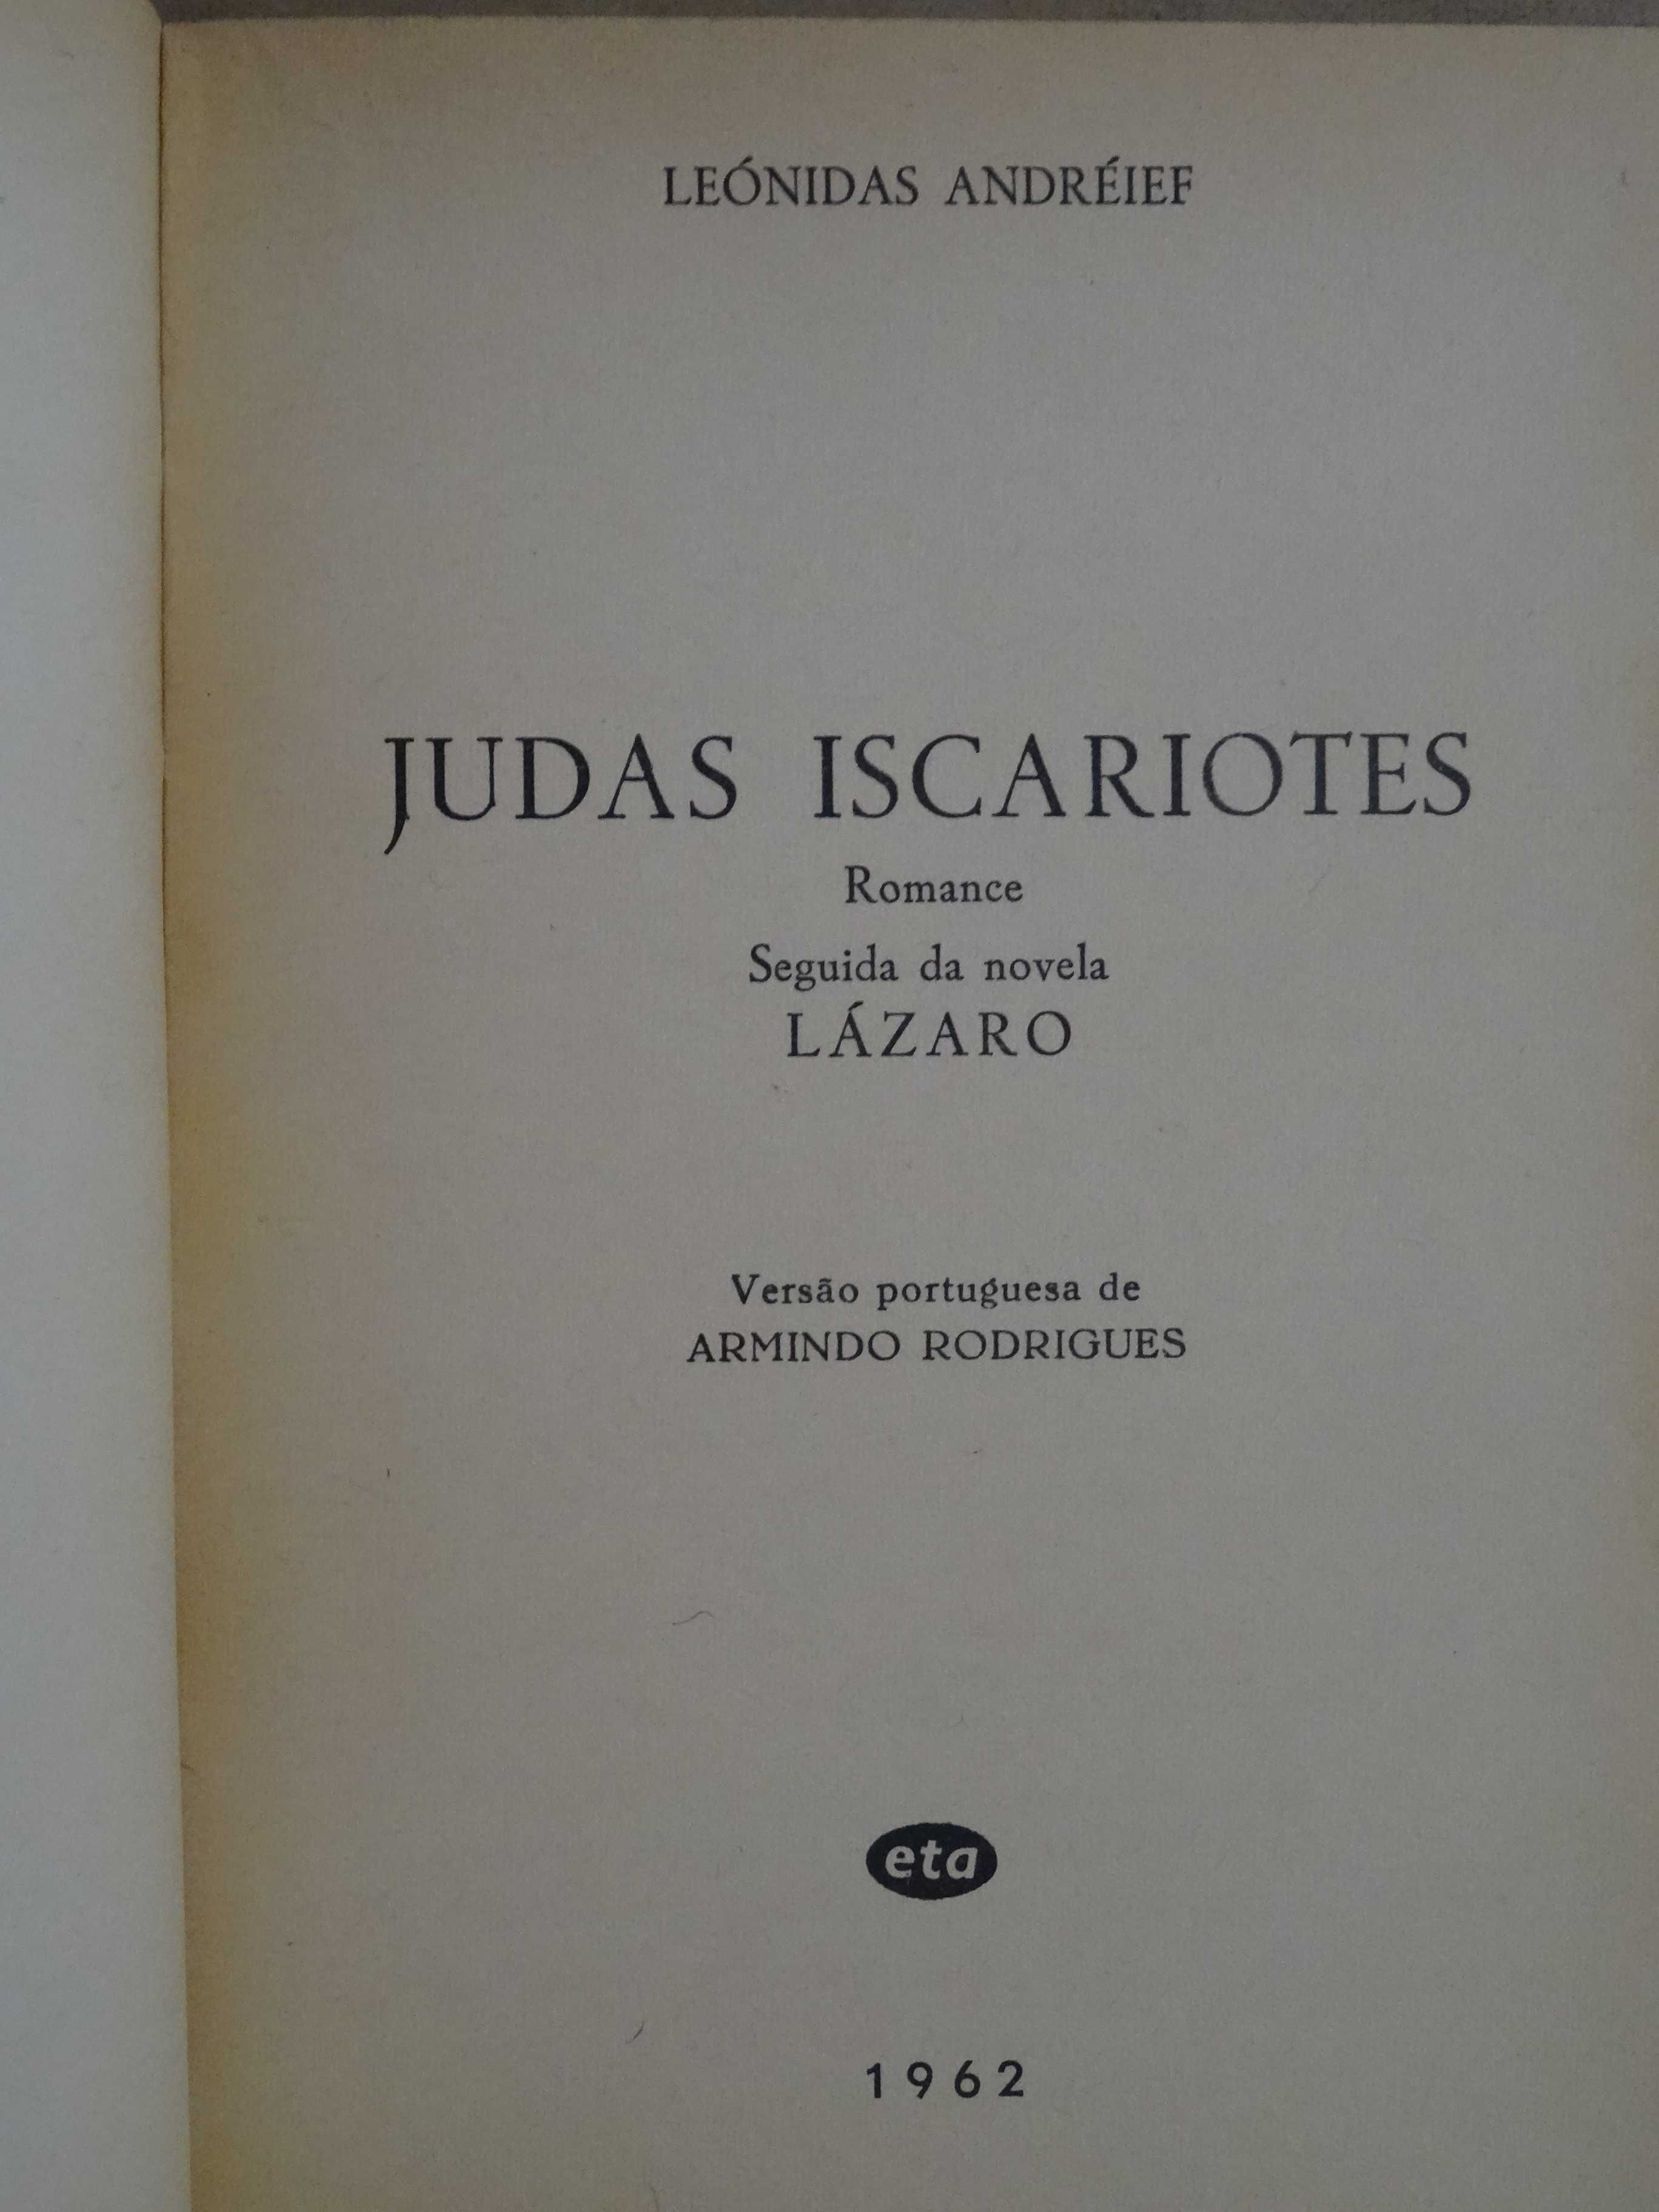 Judas Iscariotes de Leonidas Andreieff